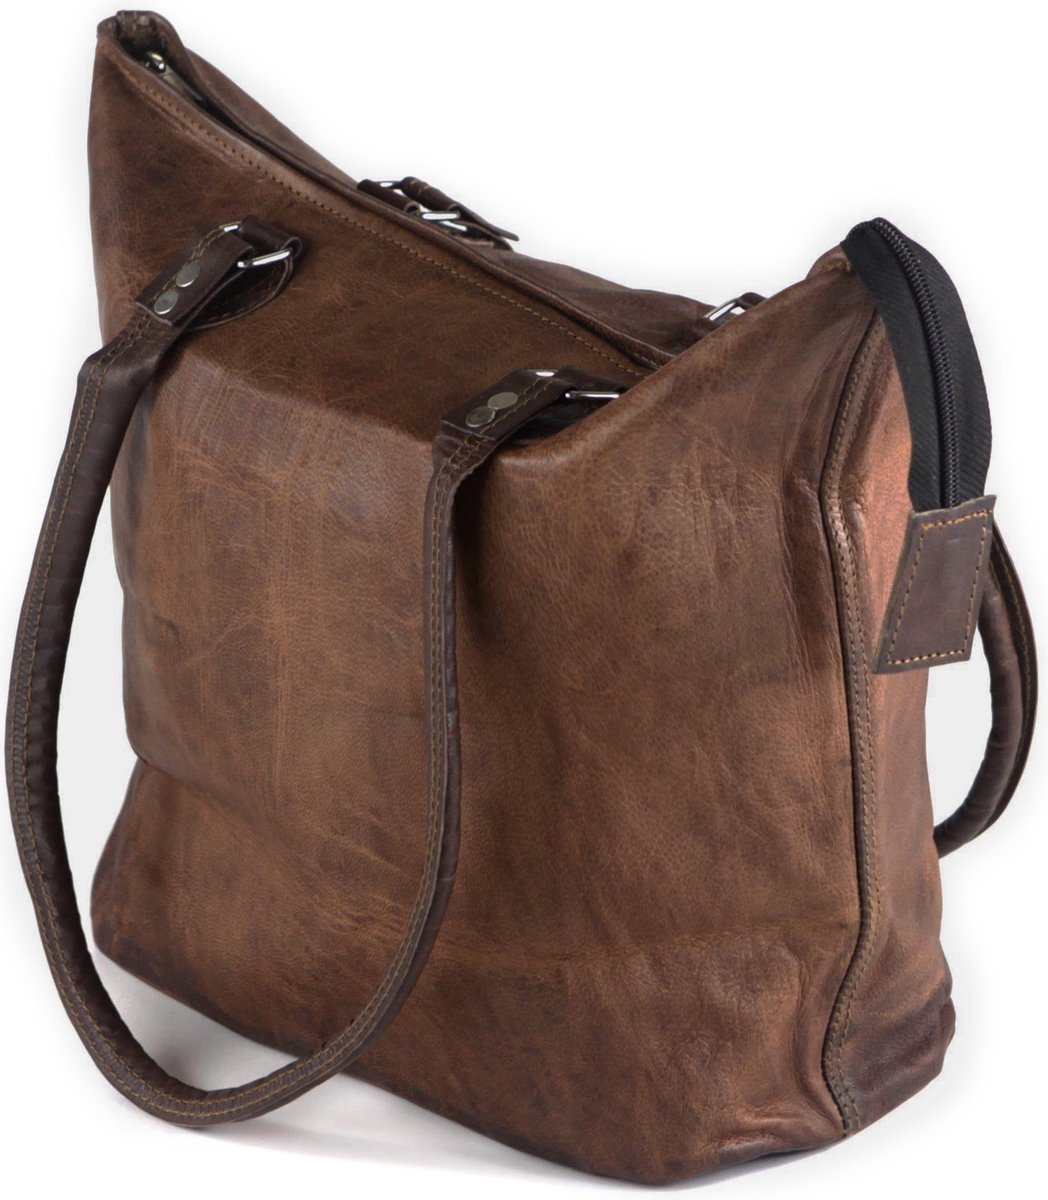 Boodschappentas Shopper Bag ‘’ASTURIAS’’ Bucket Tote Bag 46 x 36 x 12 cm – Echt leer – Bruin Cognac Kleur – Handgemaakt